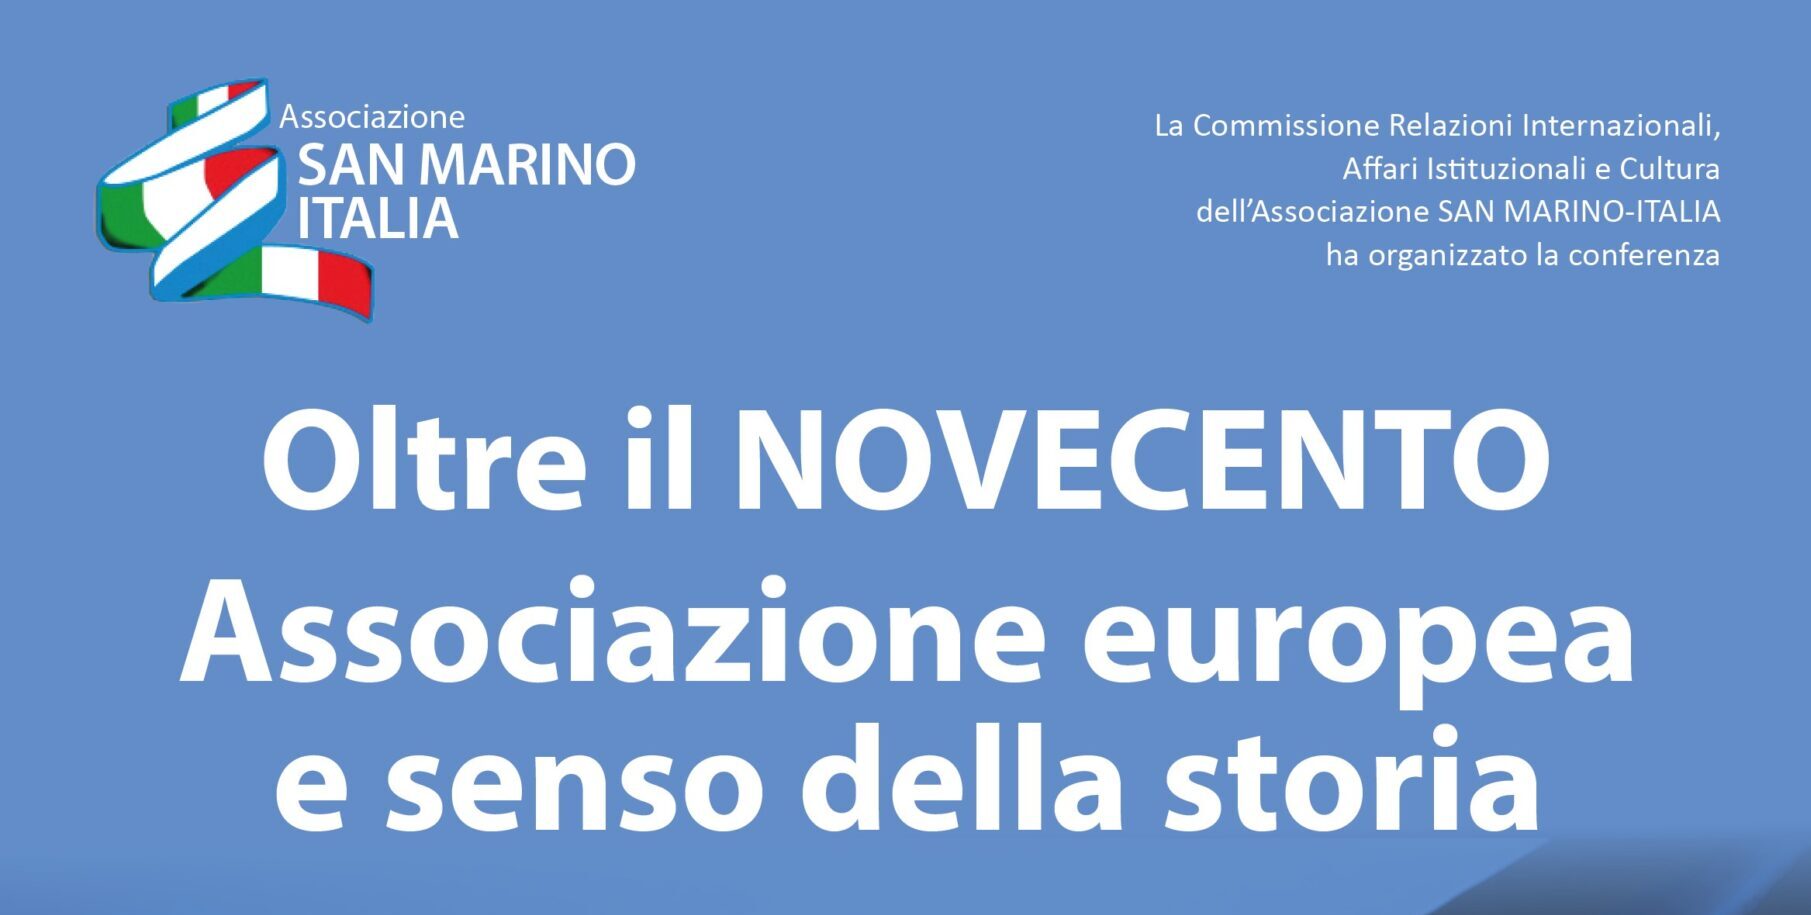 San Marino. Giovedì prossimo una conferenza su “Oltre il Novecento, associazione europea e senso della storia”